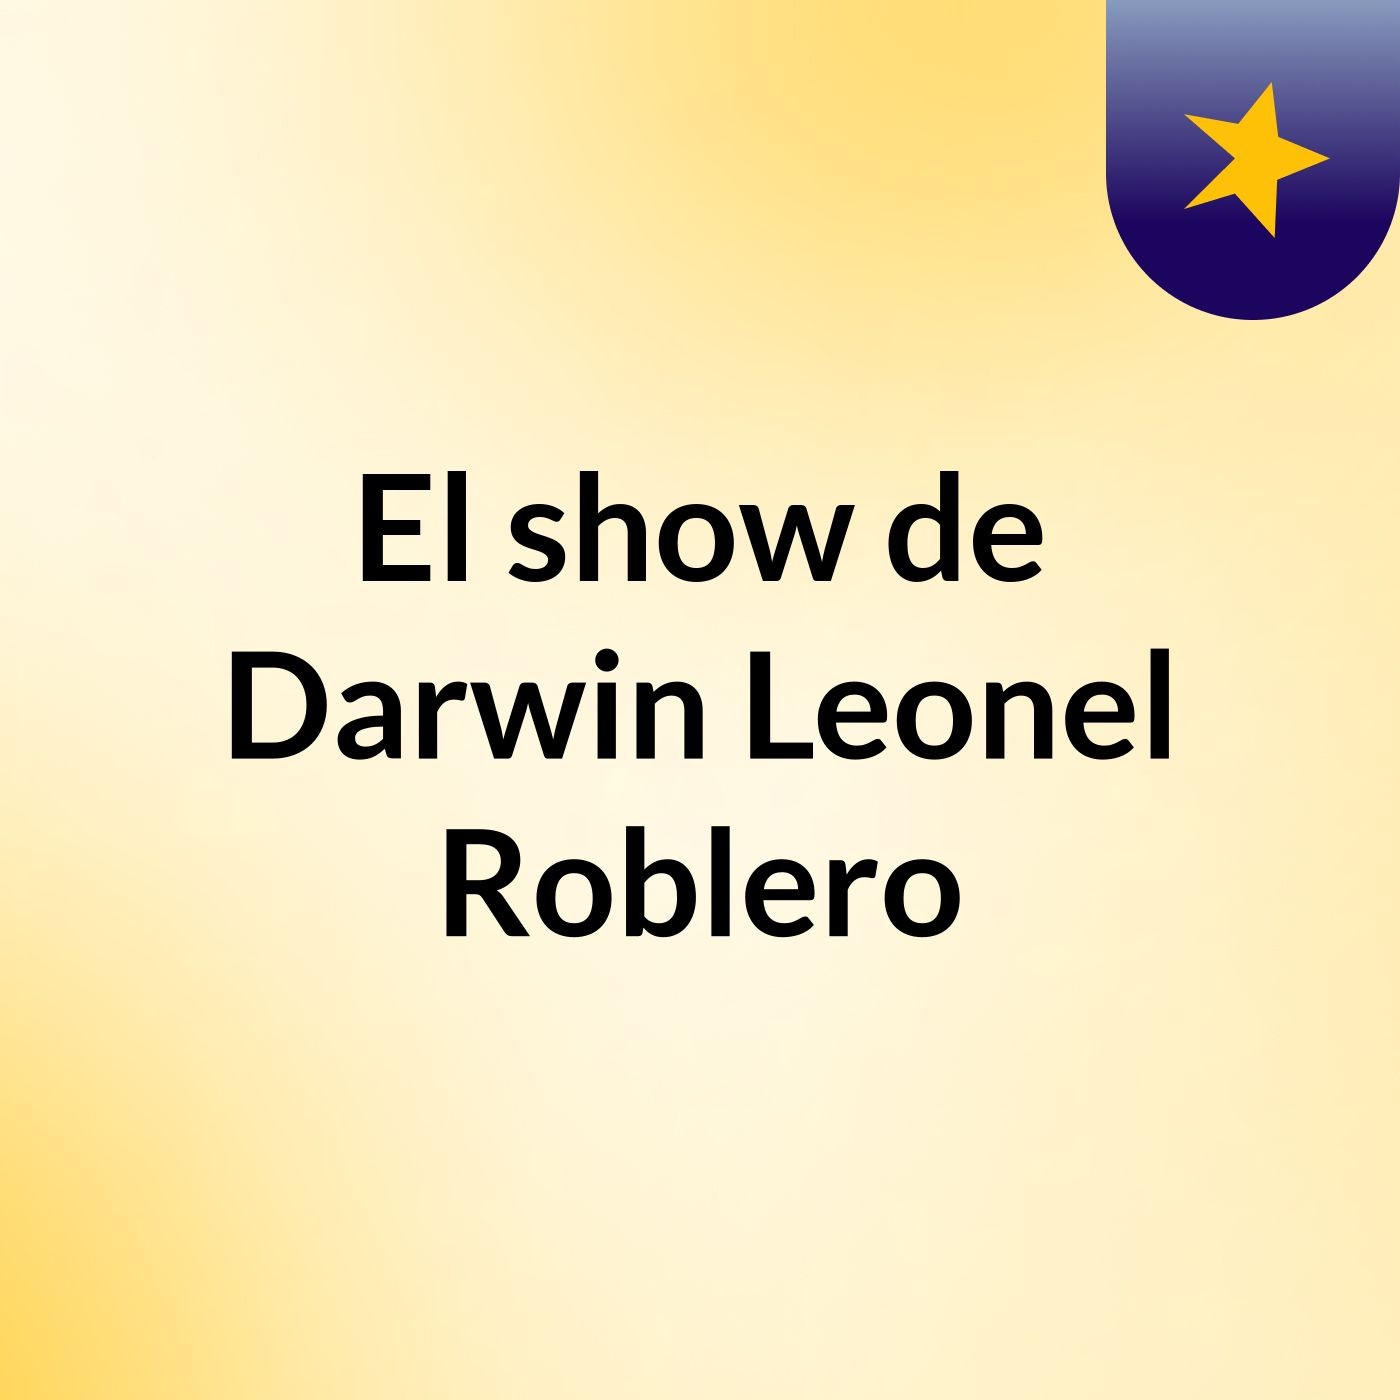 El show de Darwin Leonel Roblero